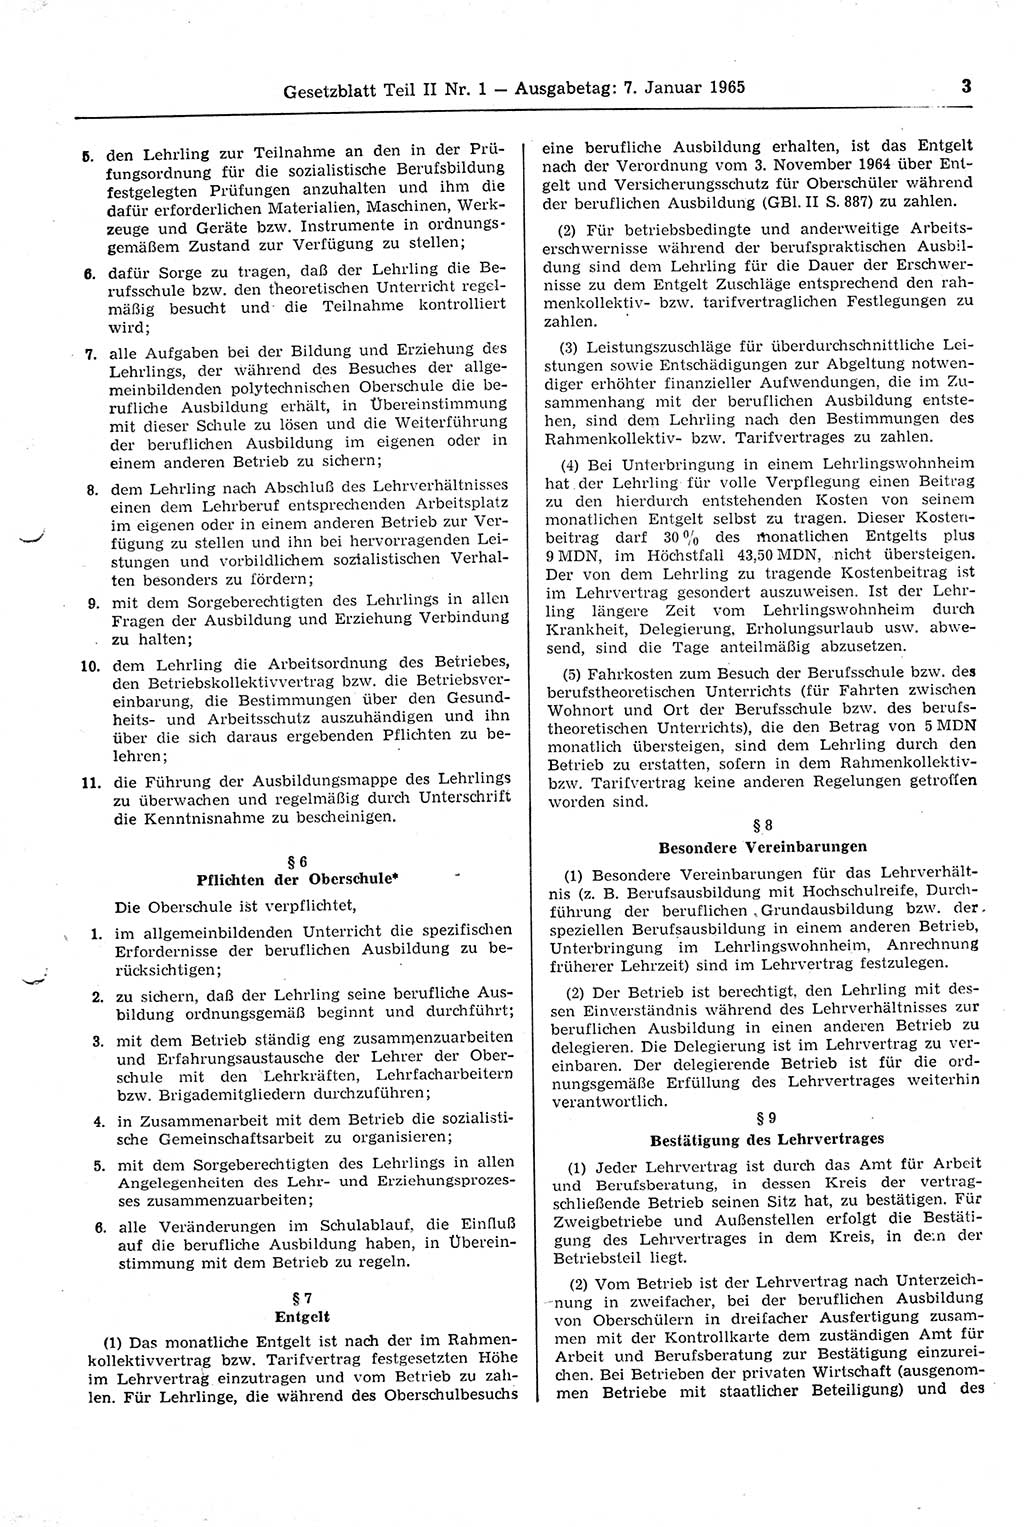 Gesetzblatt (GBl.) der Deutschen Demokratischen Republik (DDR) Teil ⅠⅠ 1965, Seite 3 (GBl. DDR ⅠⅠ 1965, S. 3)